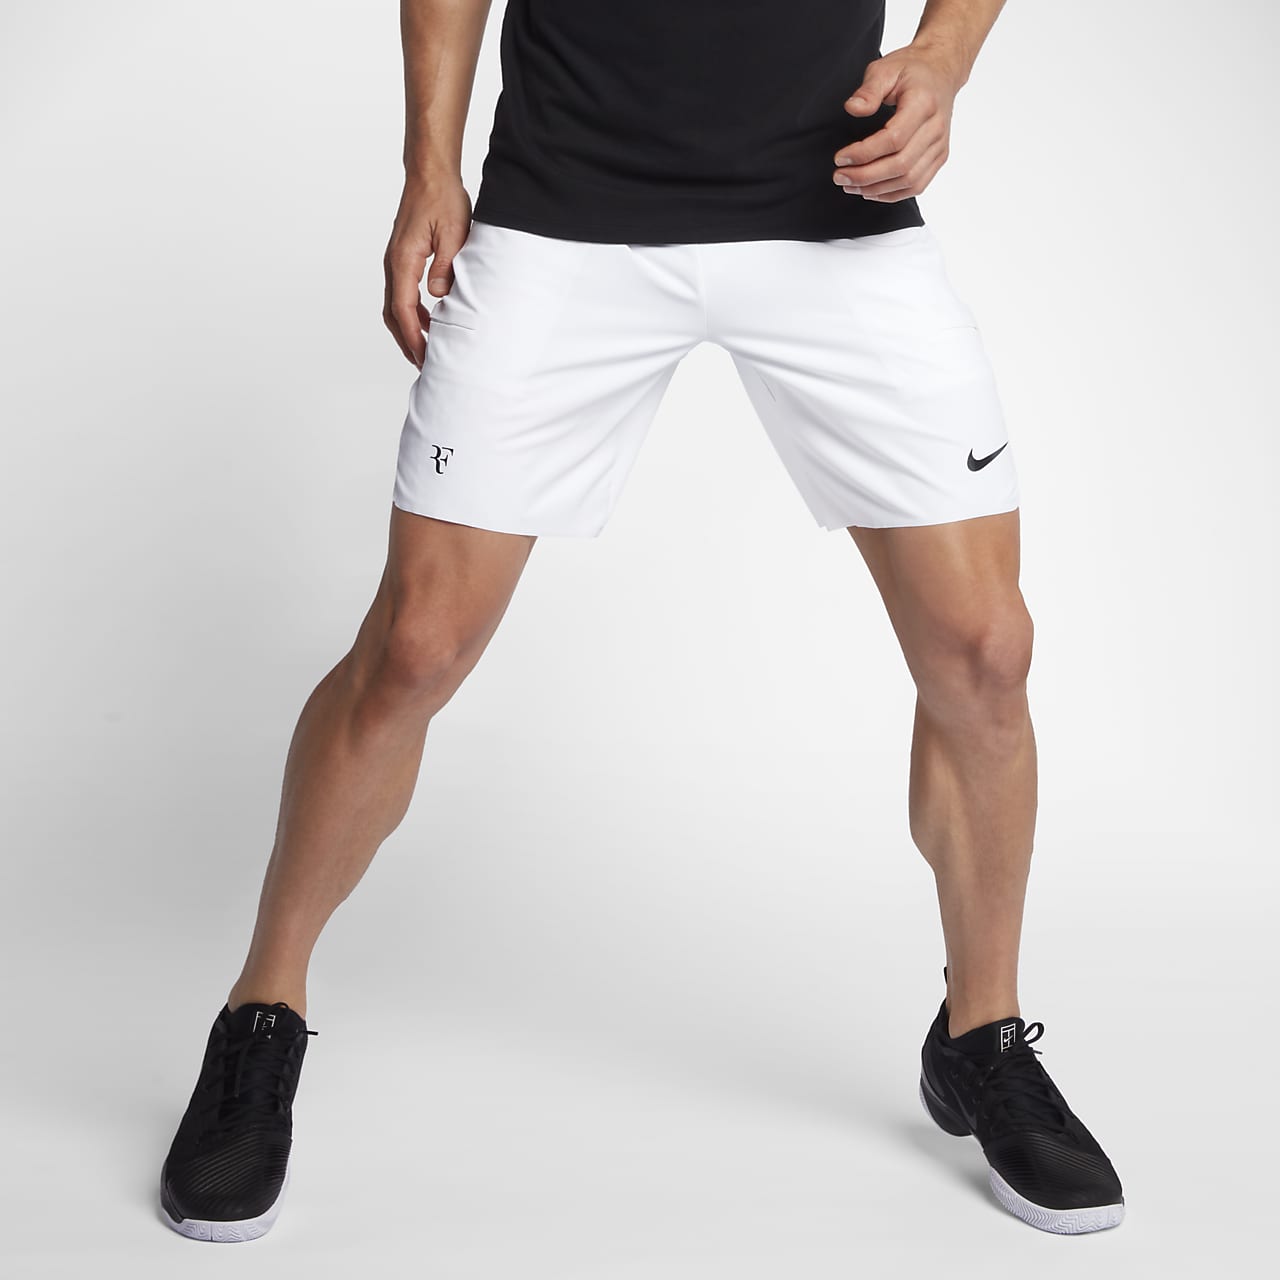 NikeCourt Flex RF 9" 男子网球短裤